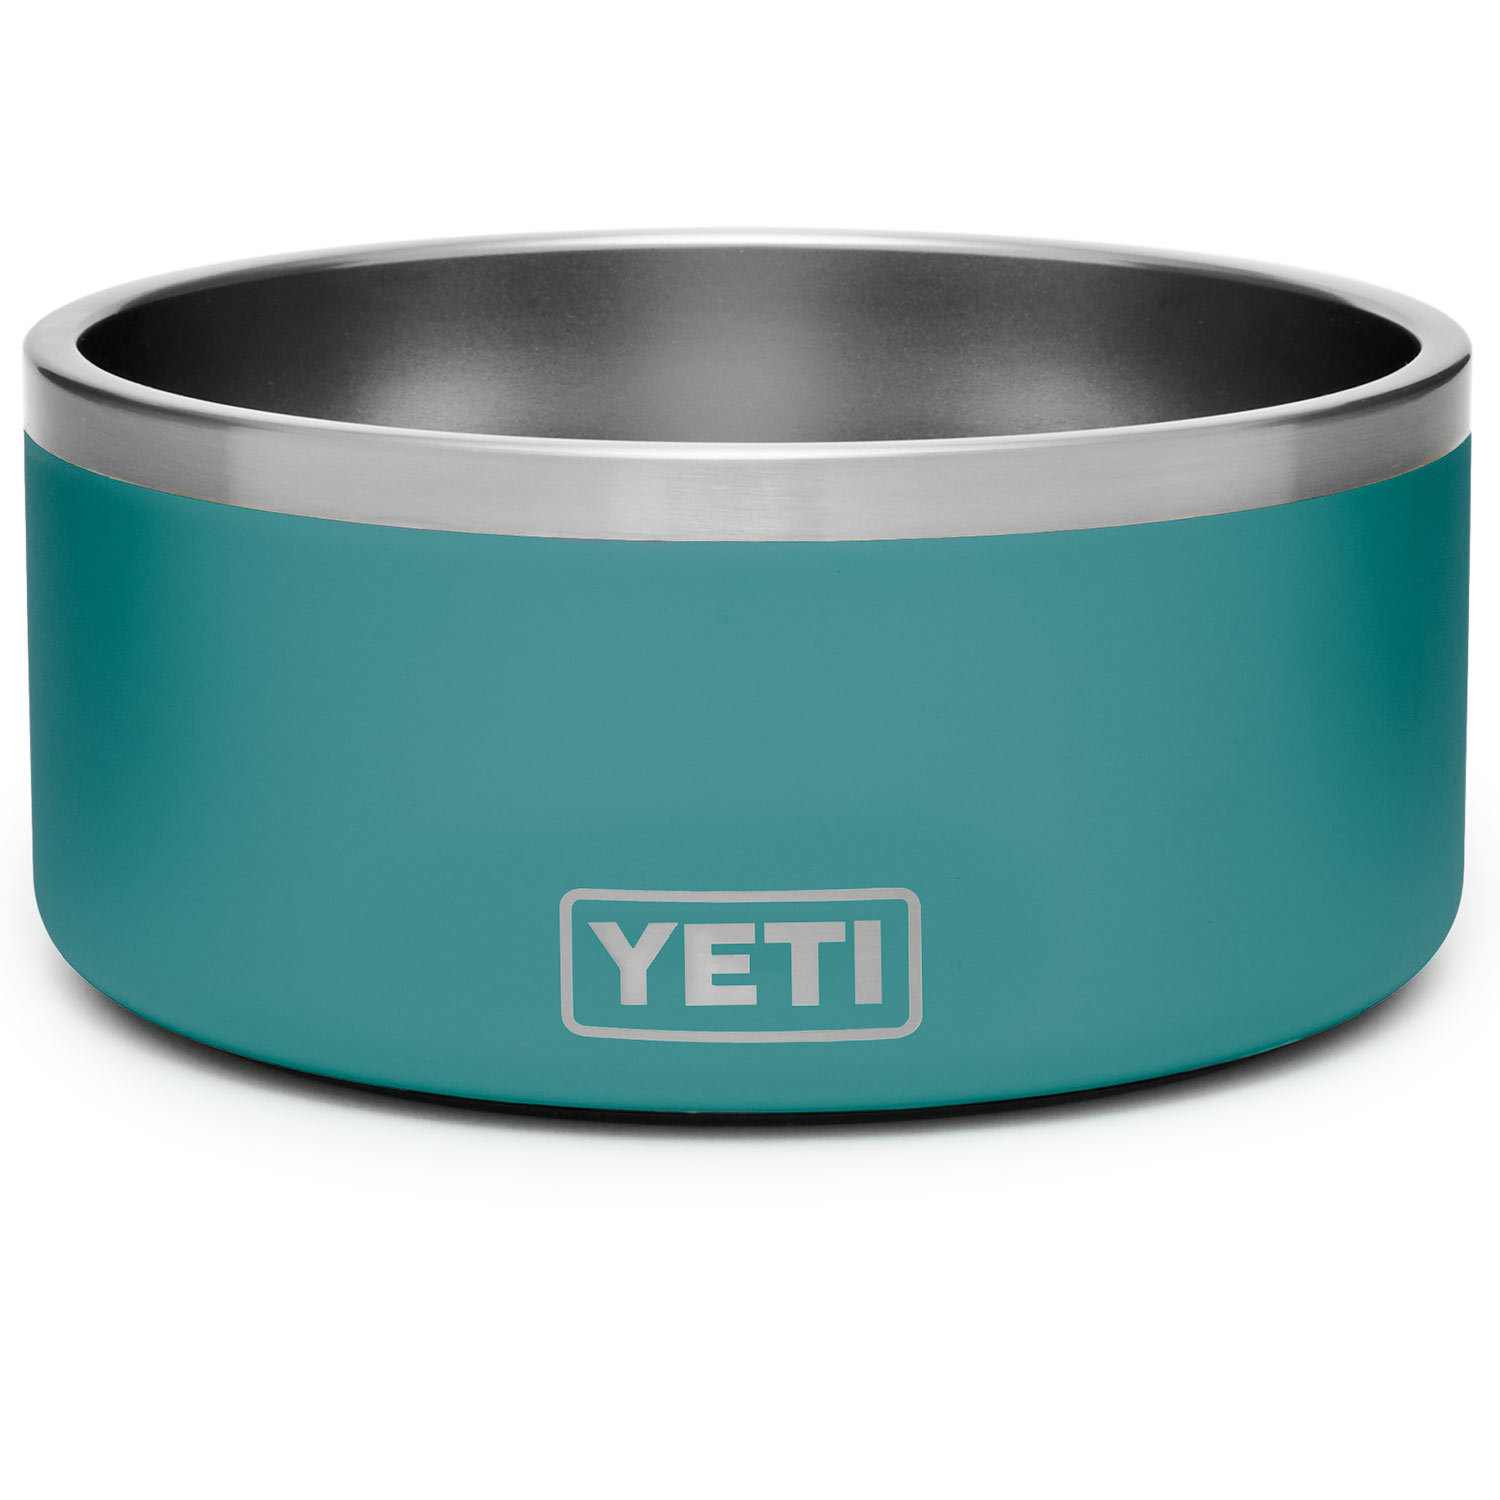 Yeti Boomer 8 Dog Bowl – Reef & Reel